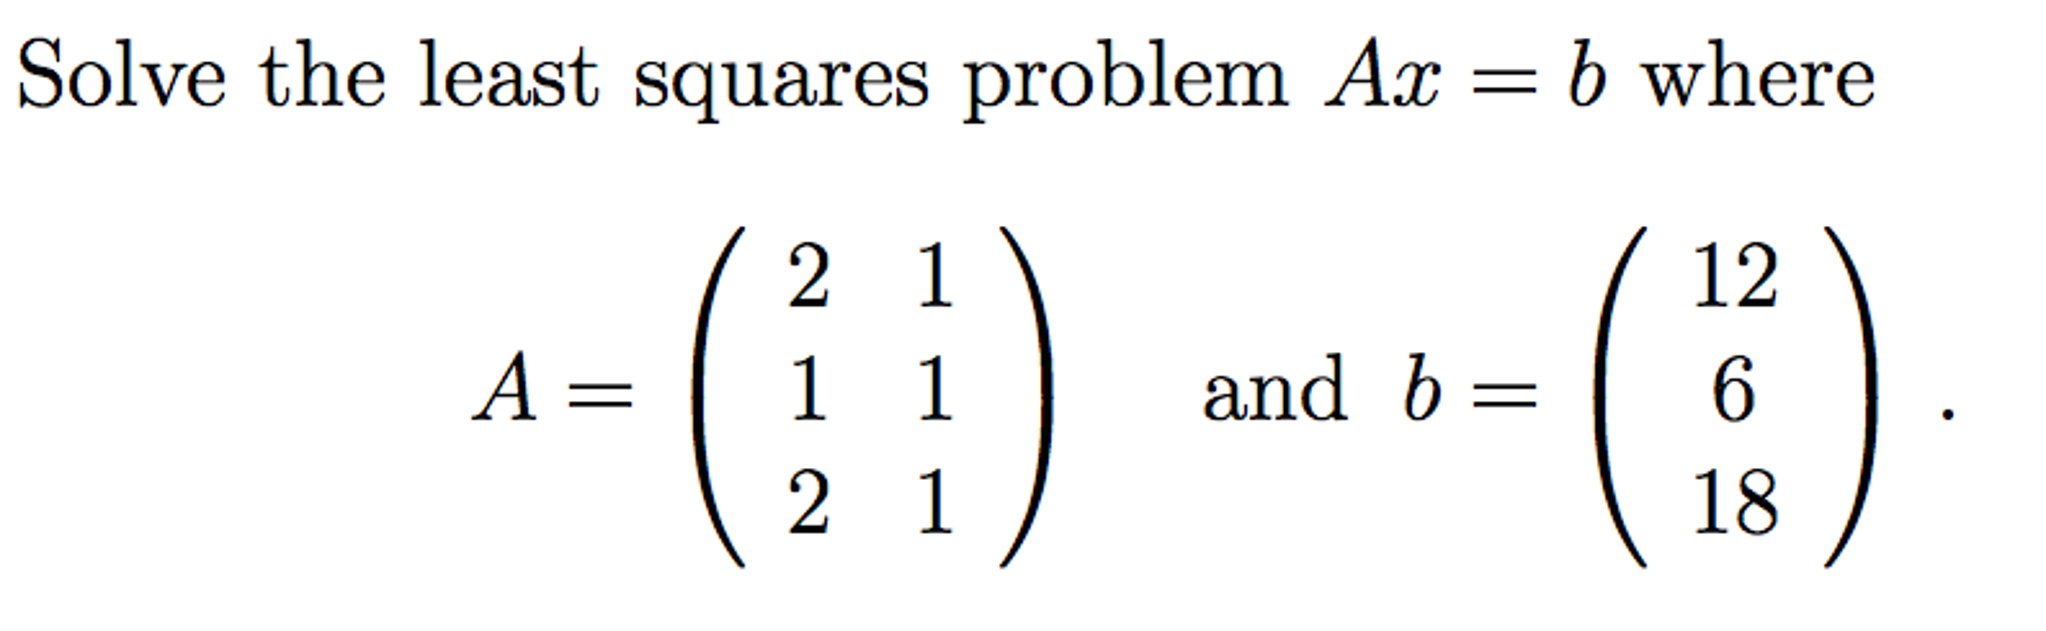 solve a least squares problem